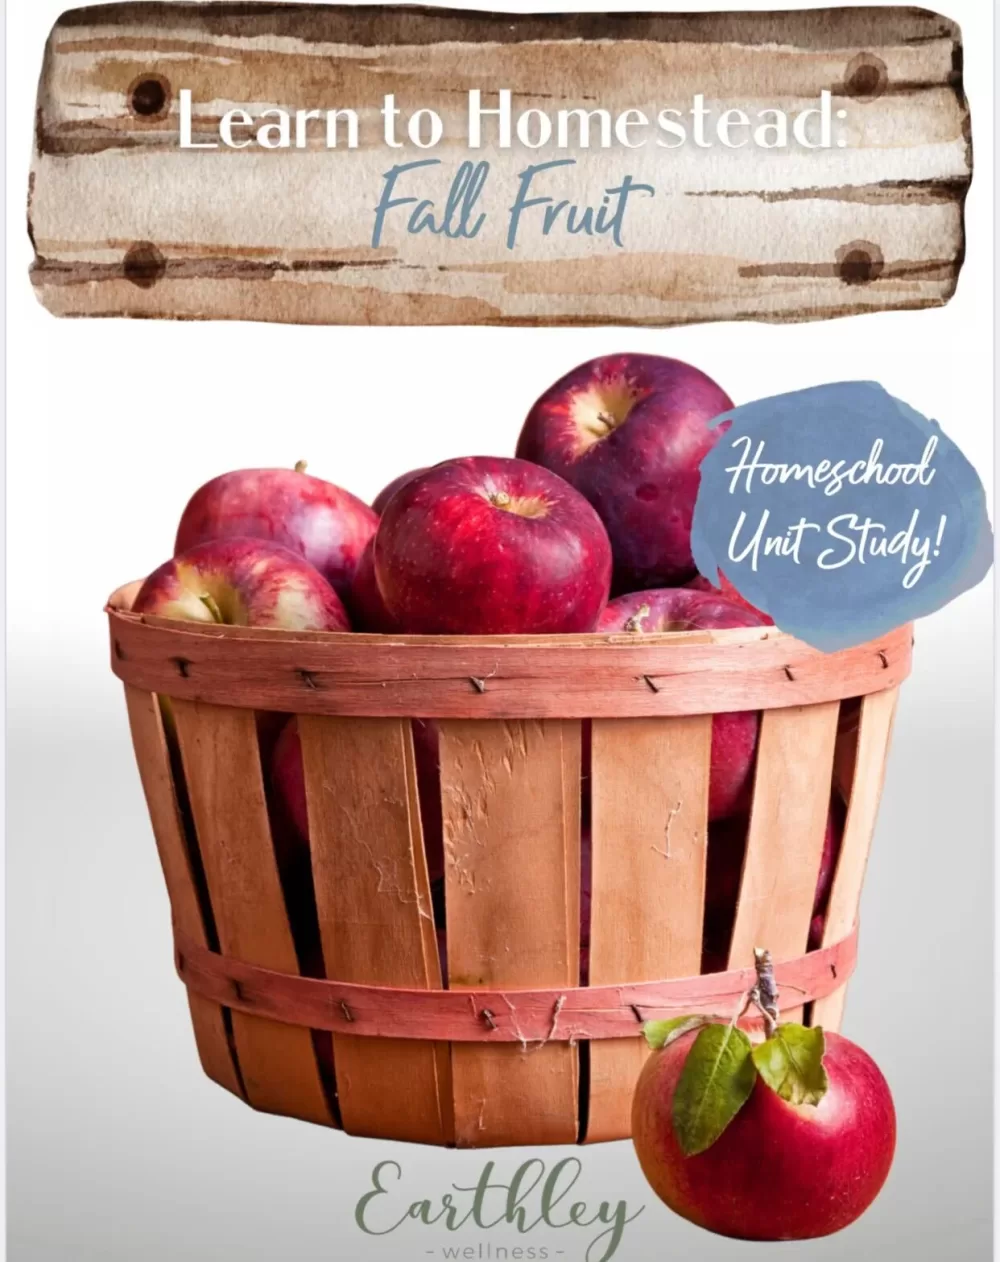 Homestead Fall Fruit Digital Homeschool Curriculum